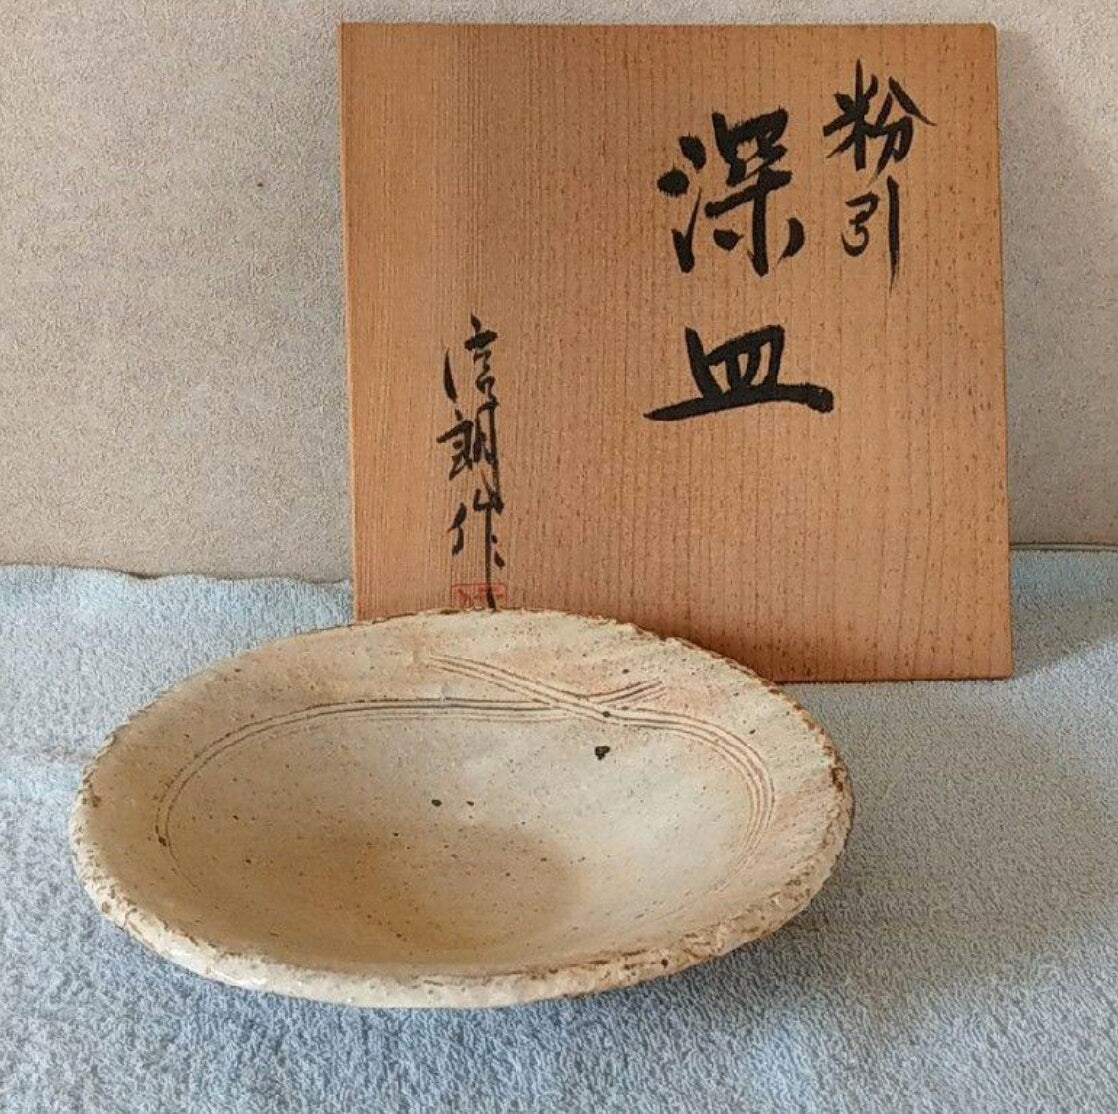 粉引、深皿、Japanese Ceramic Saucer, Shigaraki Ware, Kohiki, Fukazara, Furutani Pottery, Size 24cm diameter, comes with wooden protected box